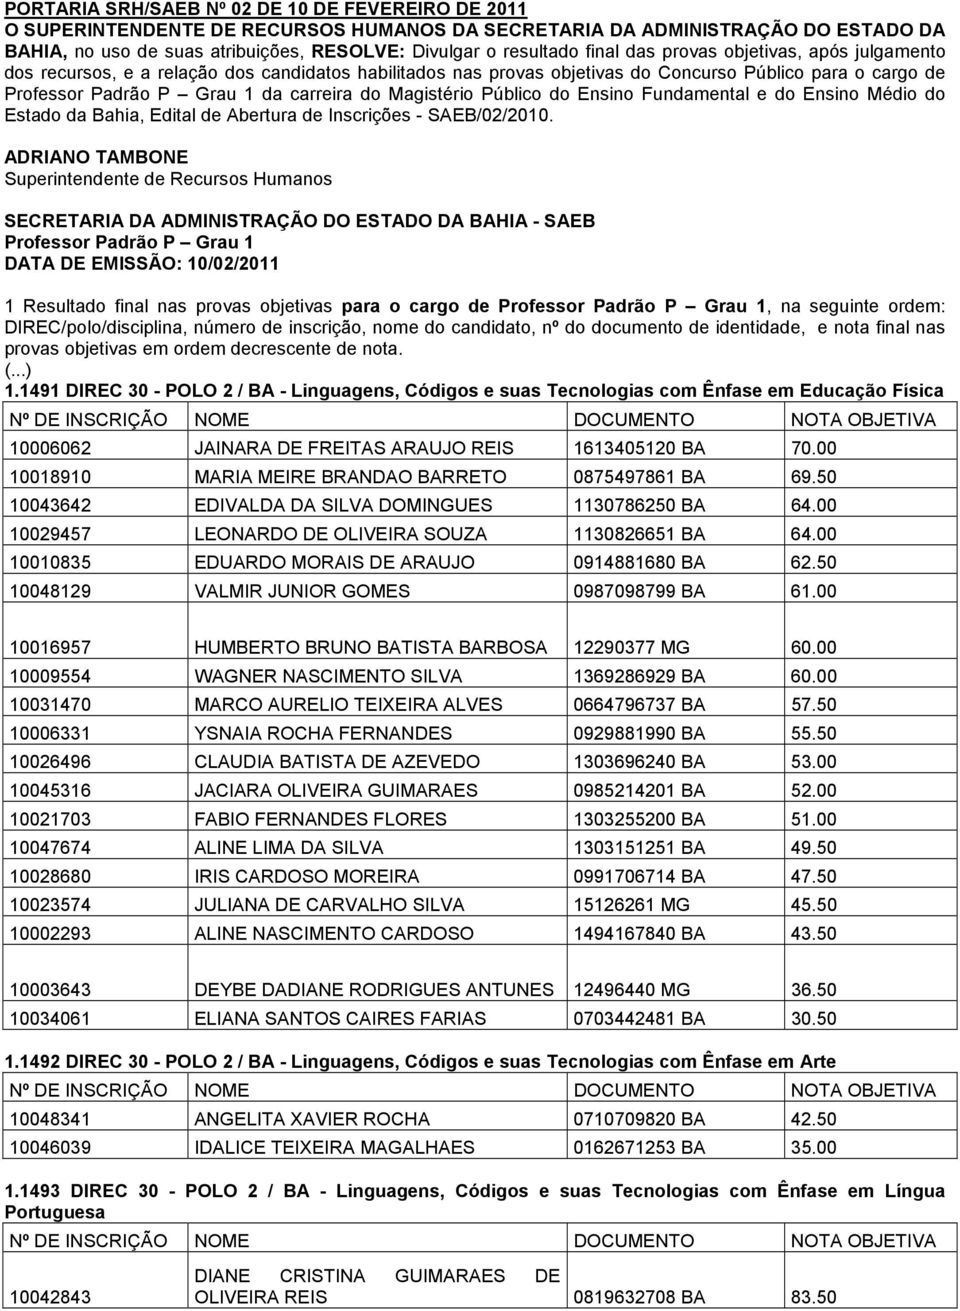 Magistério Público do Ensino Fundamental e do Ensino Médio do Estado da Bahia, Edital de Abertura de Inscrições - SAEB/02/2010.